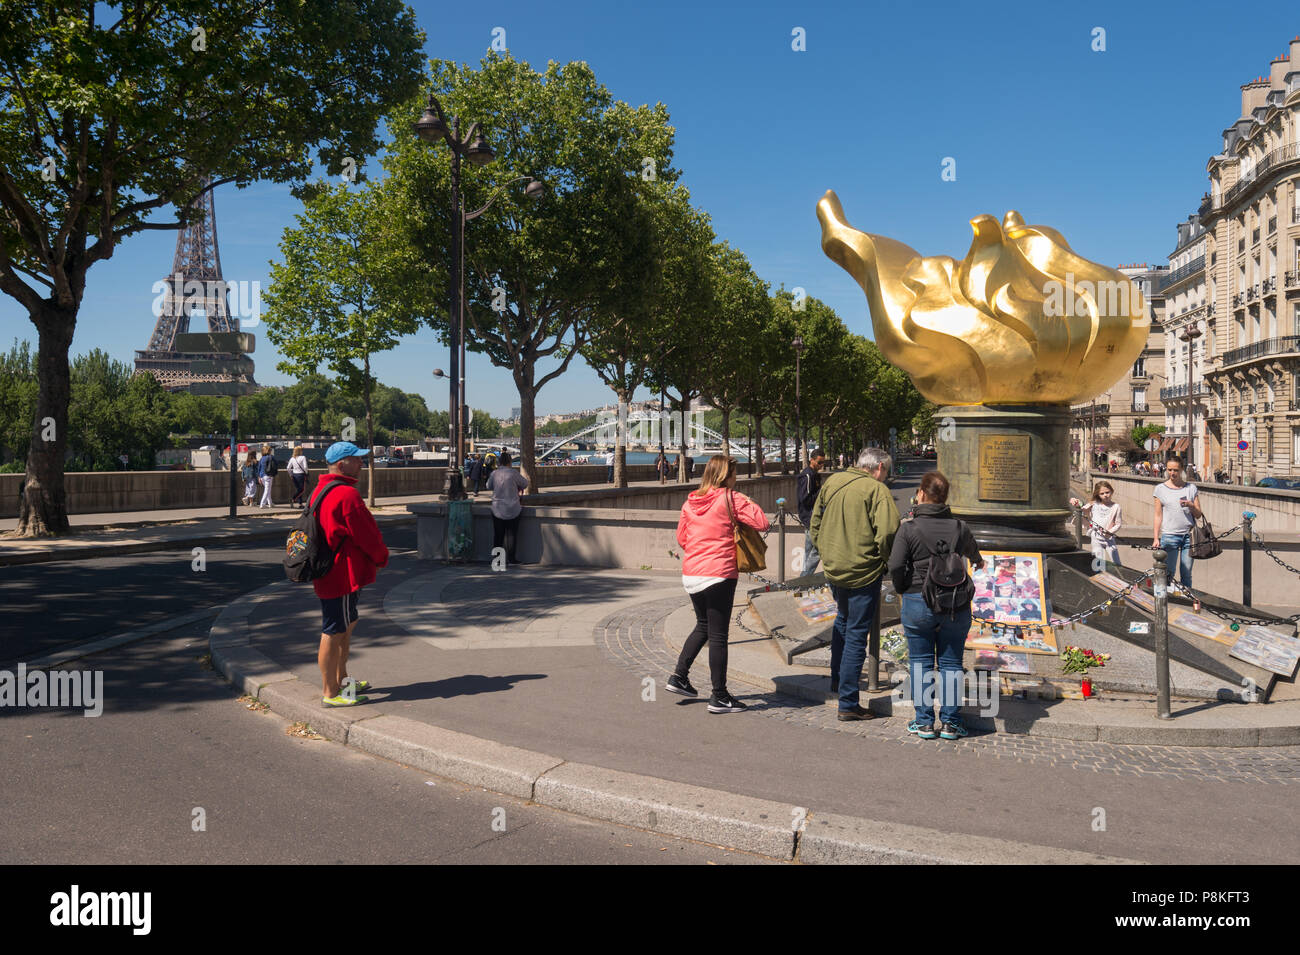 Parigi, Francia - 23 Giugno 2018: turisti si riuniscono di fronte alla fiamma della libertà, un memoriale non ufficiale di Diana, principessa di Galles. Foto Stock